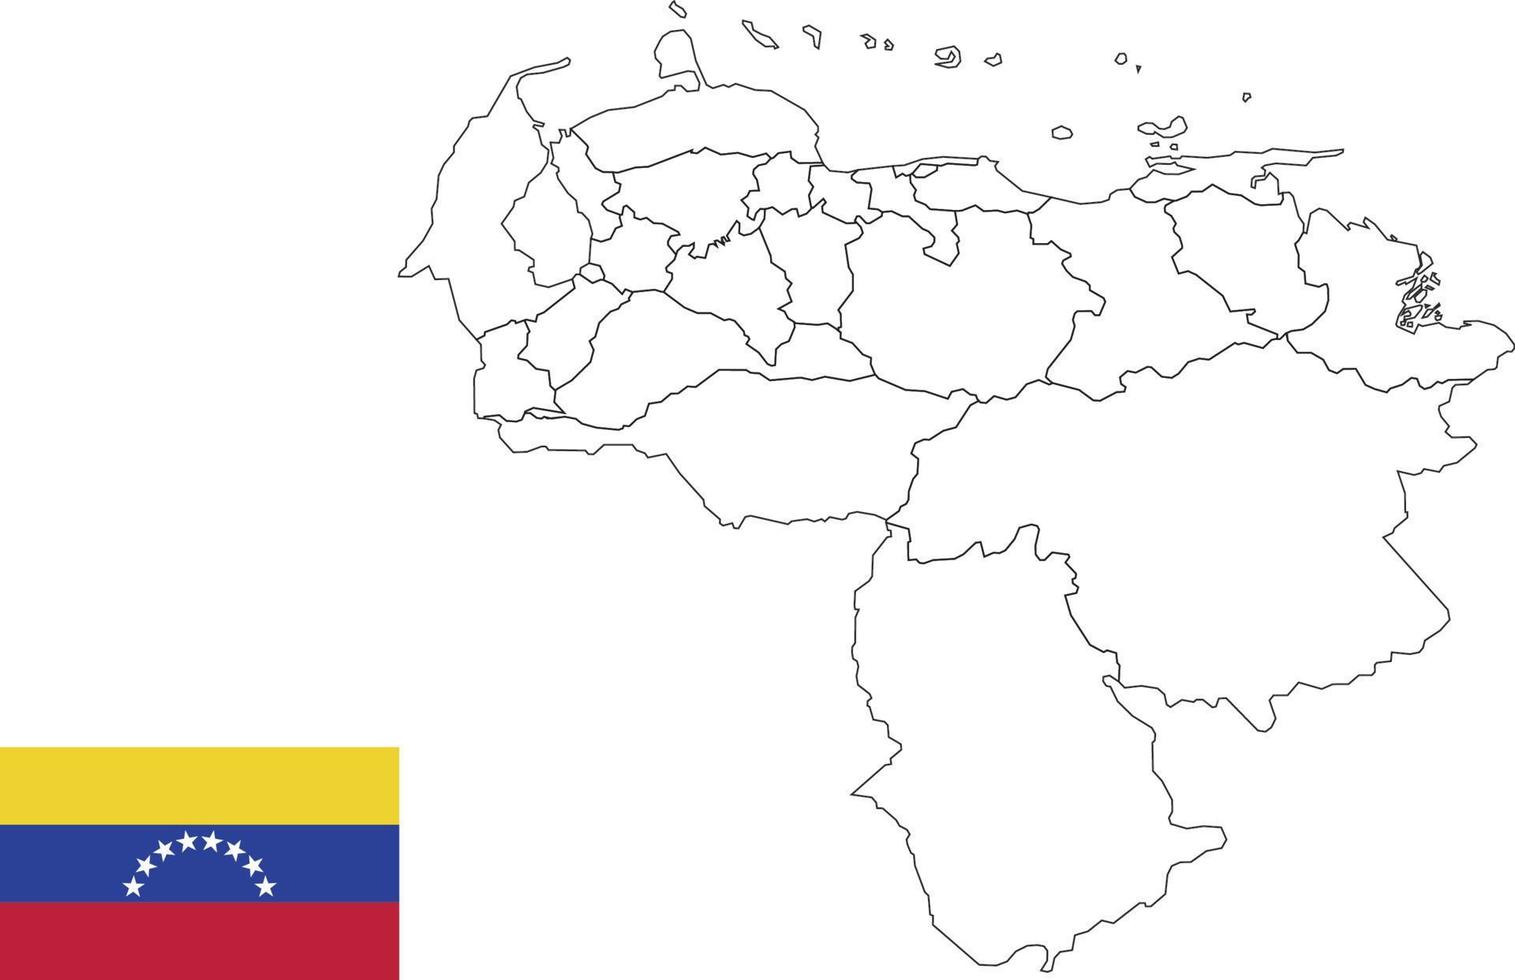 Karte und Flagge von Venezuela vektor